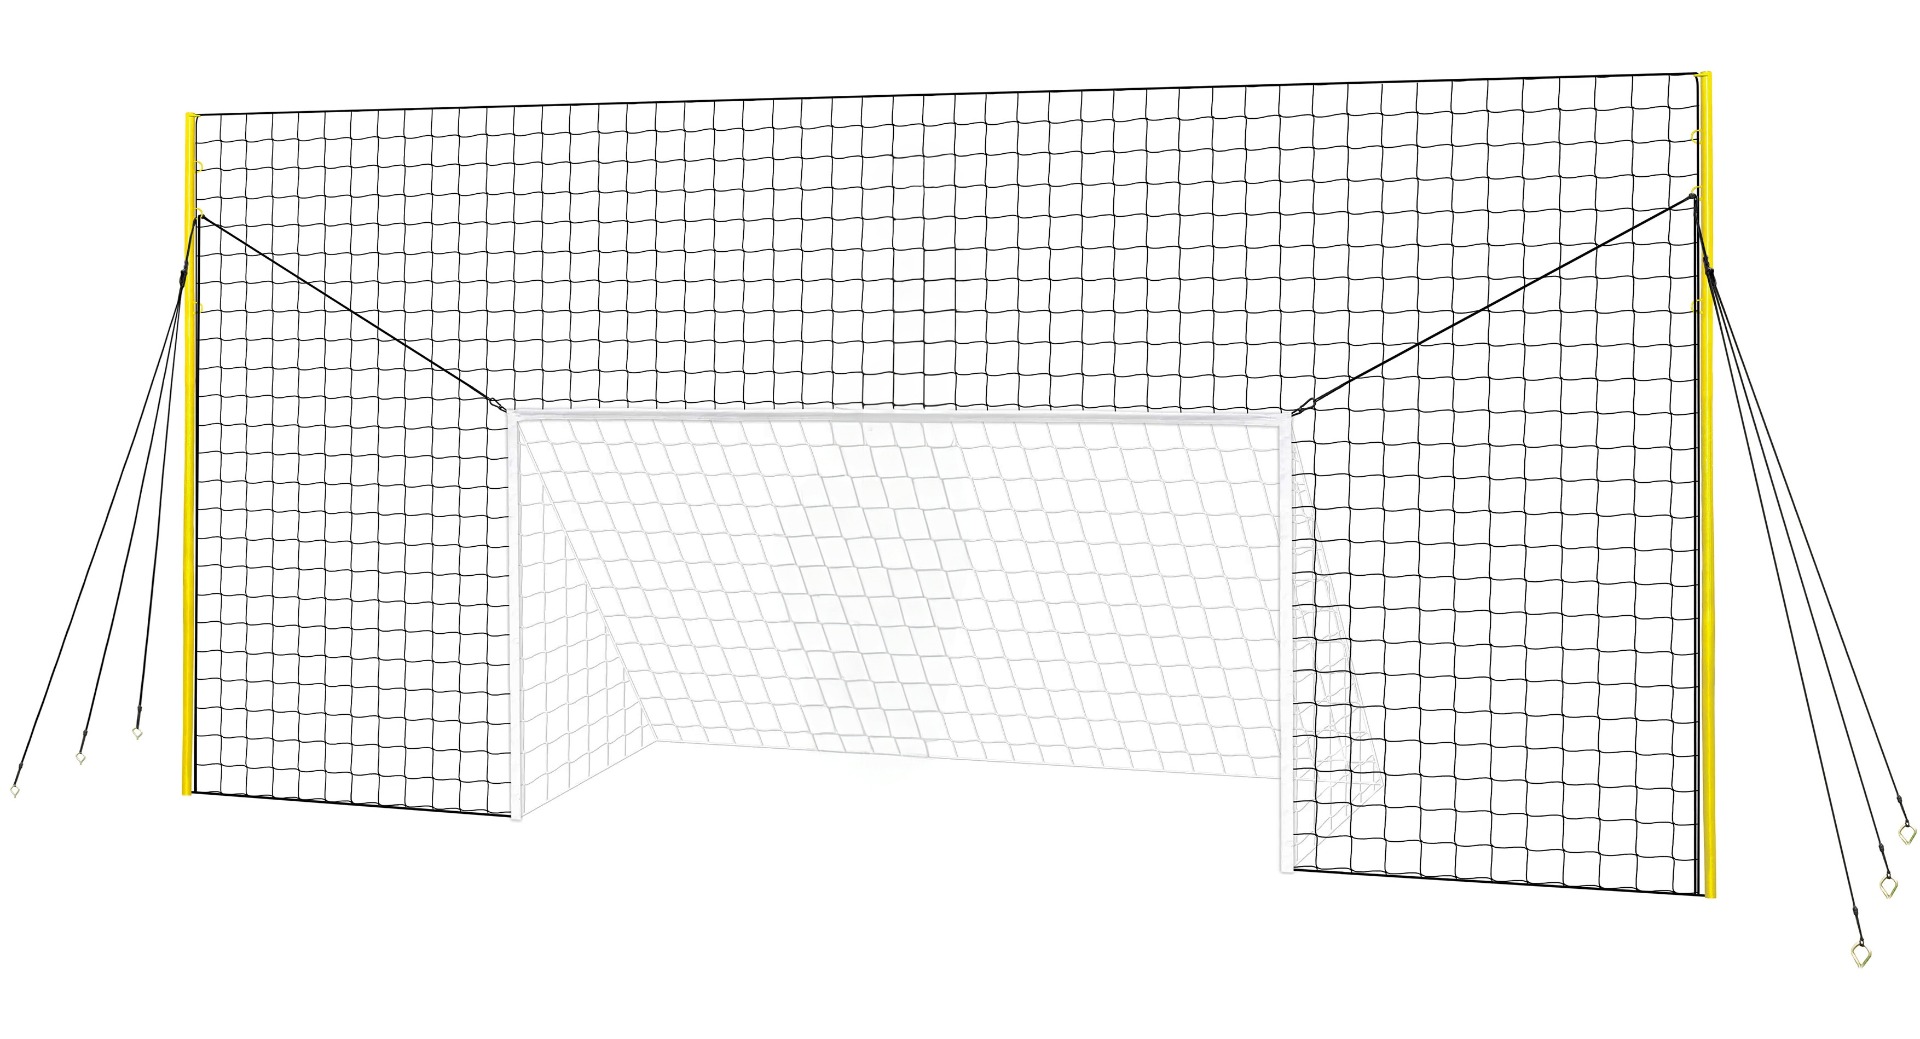 Open Goaaal Large voetbaldoel, rebounder & backstop - 3 in 1 - 490 x 210 cm